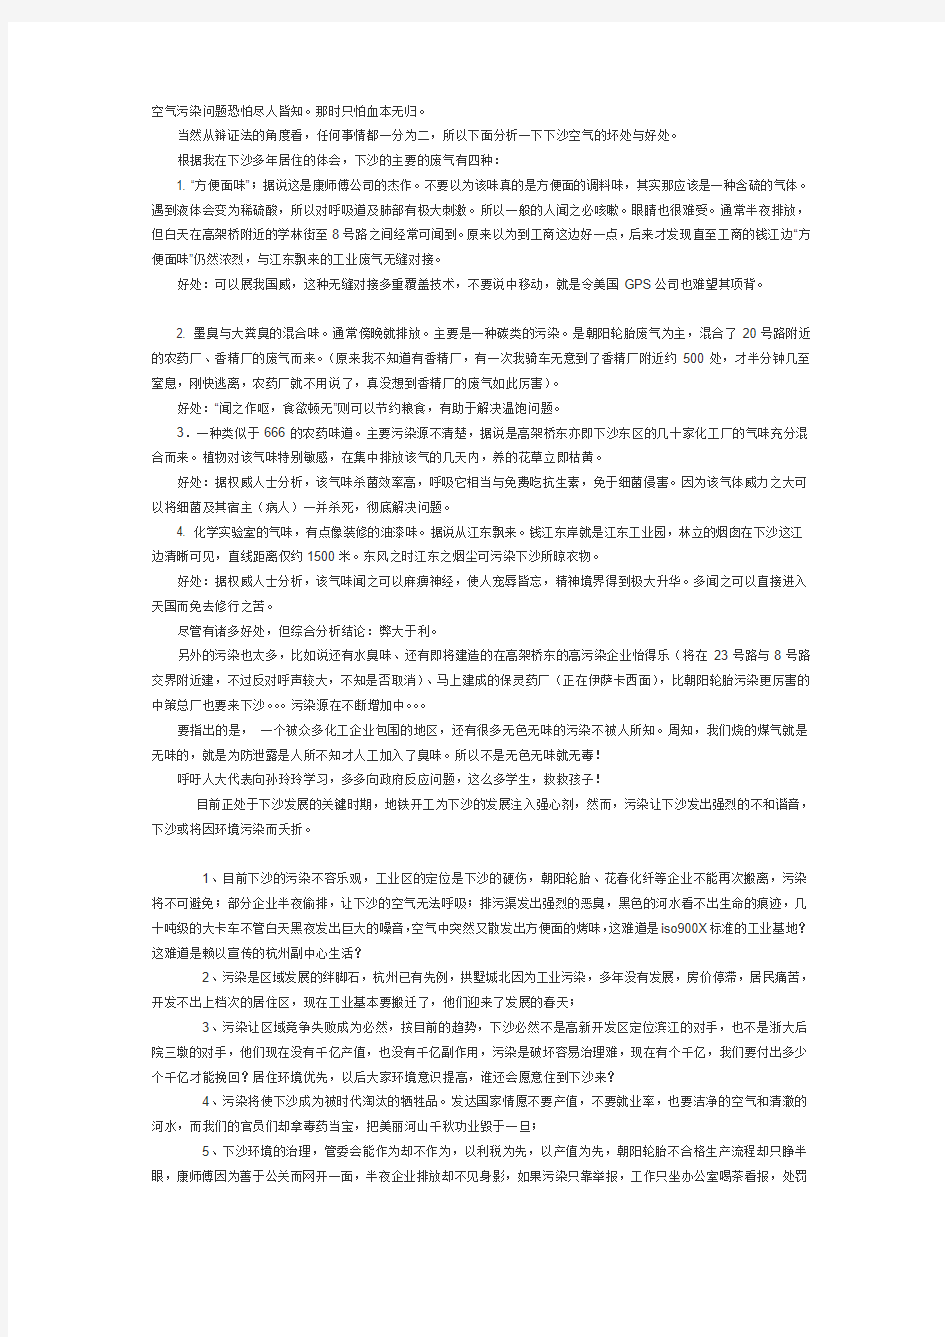 杭州下沙污染总结帖20131225